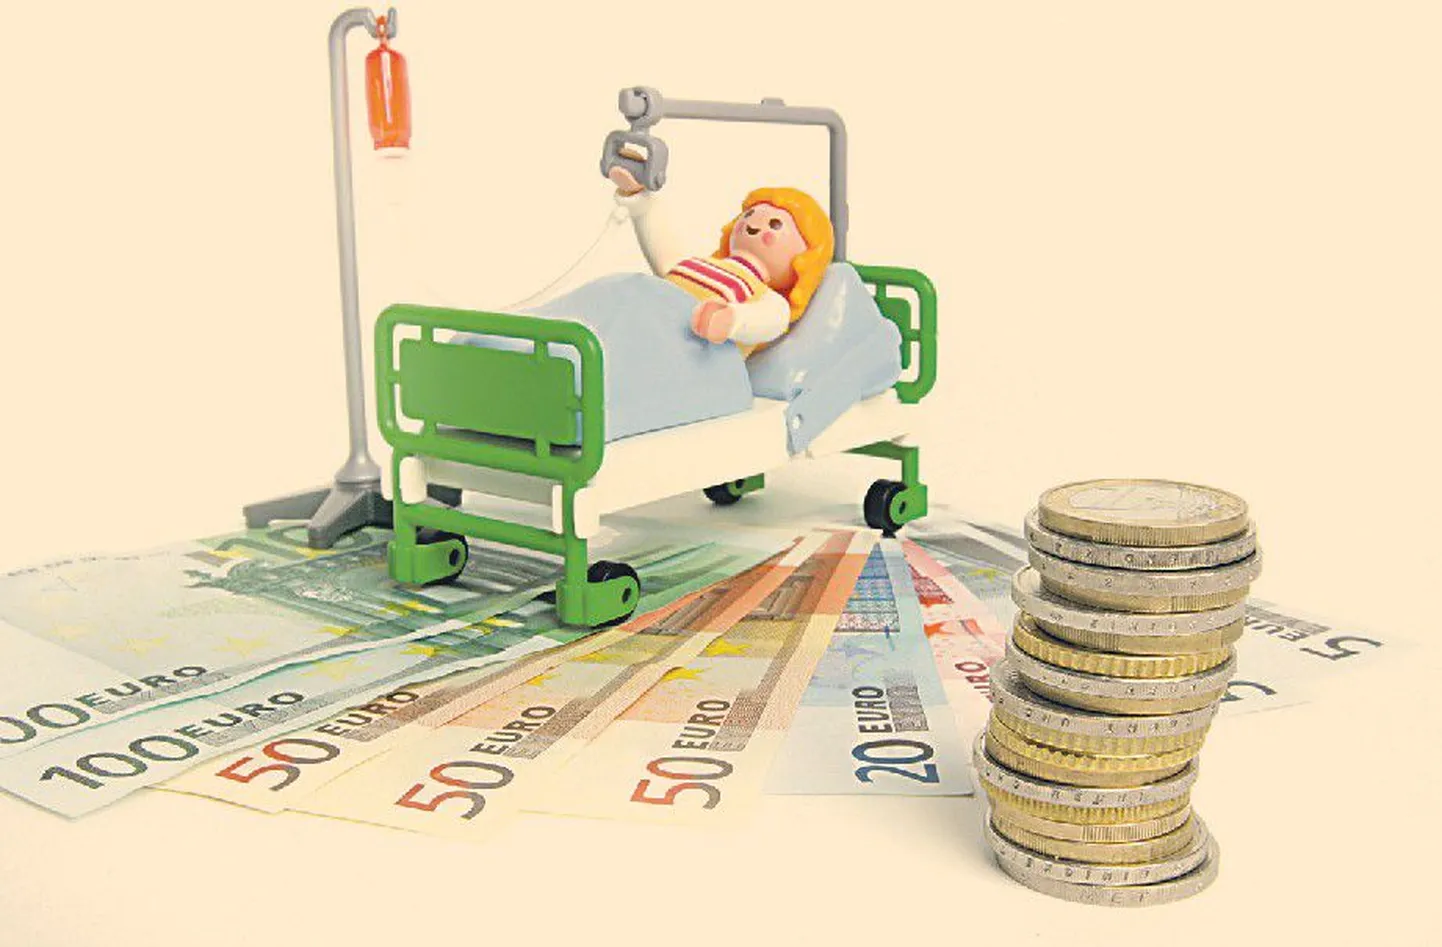 Реальная стоимость операции и последующего лечения часто превышает десятки тысяч крон.